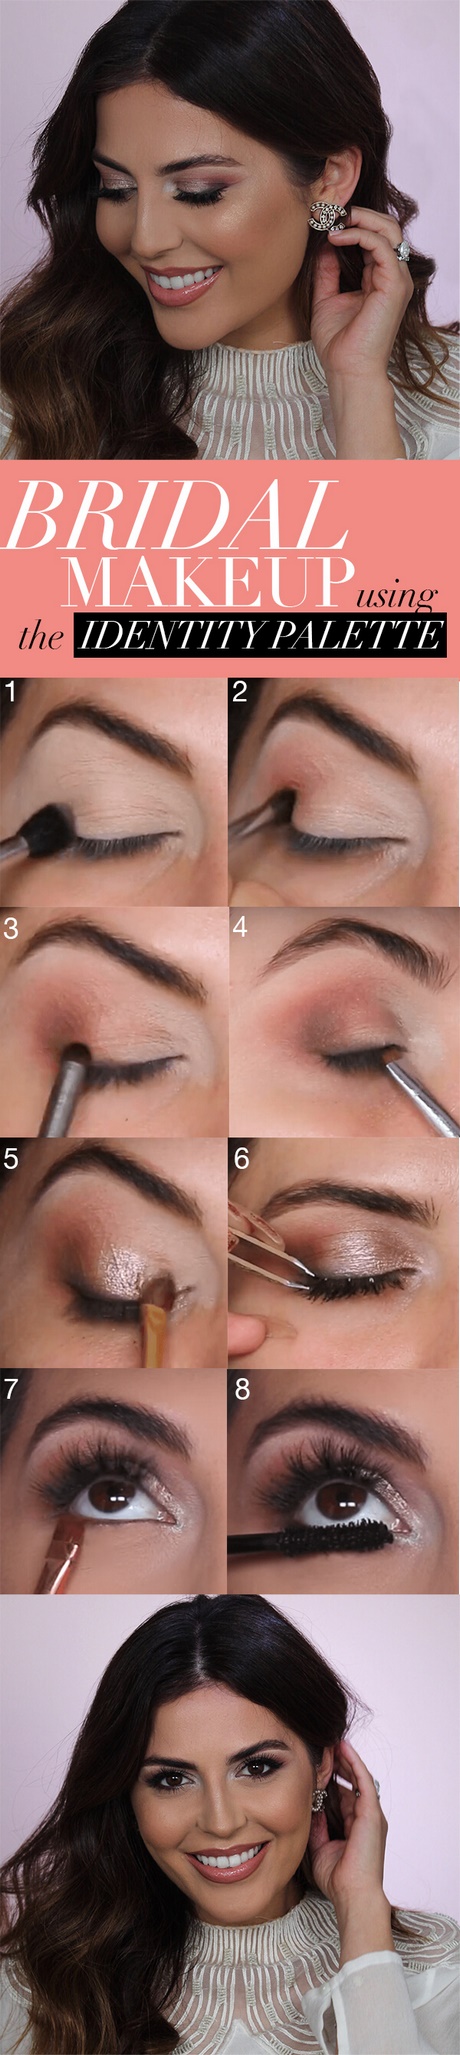 makeup-tutorial-for-wedding-88_6 Make-up les voor de bruiloft